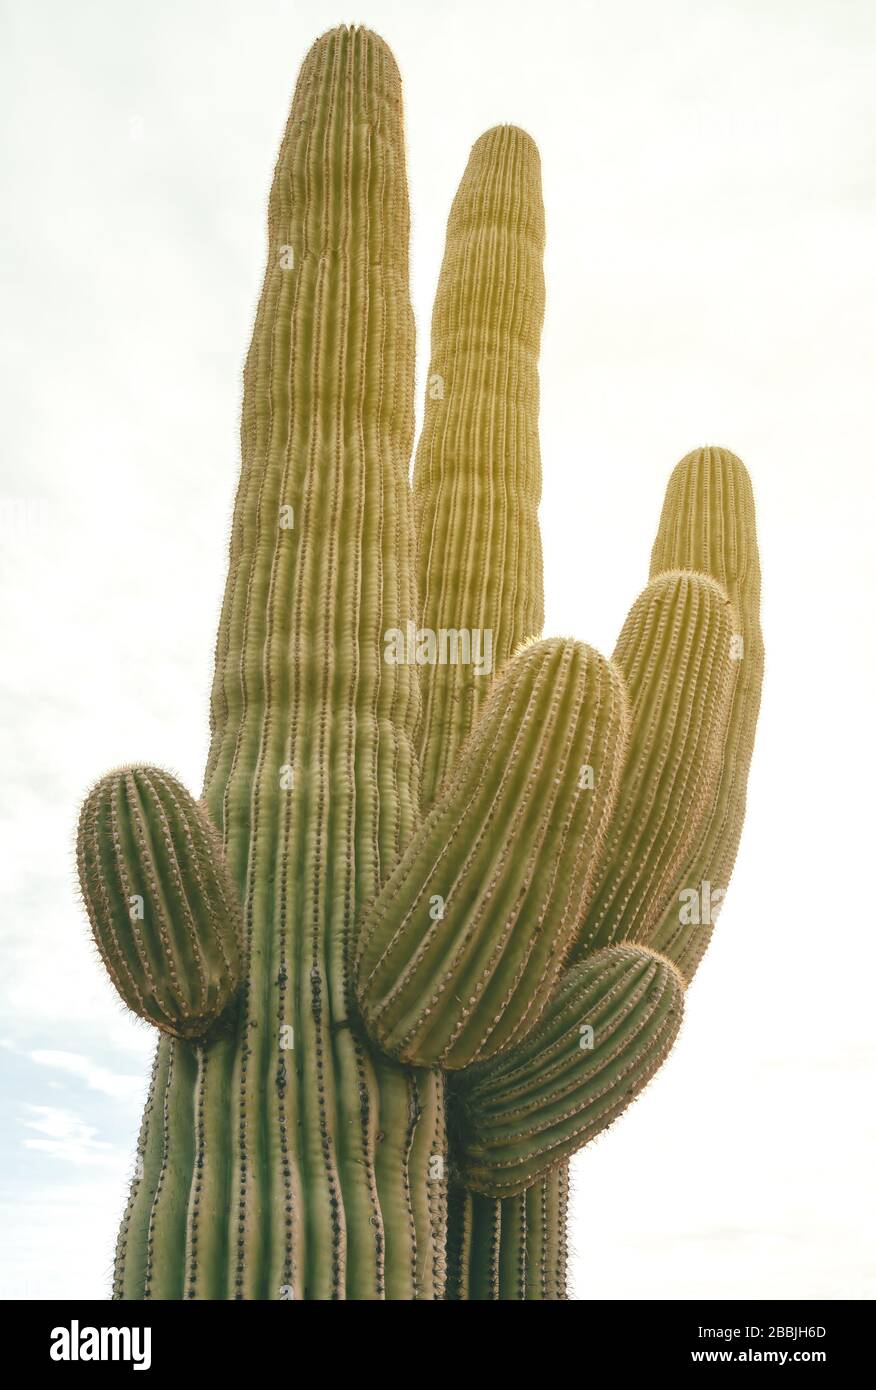 Close up at a saguaro cactus (Carnegiea gigantea), Saguaro National Park, Arizona, USA. Stock Photo